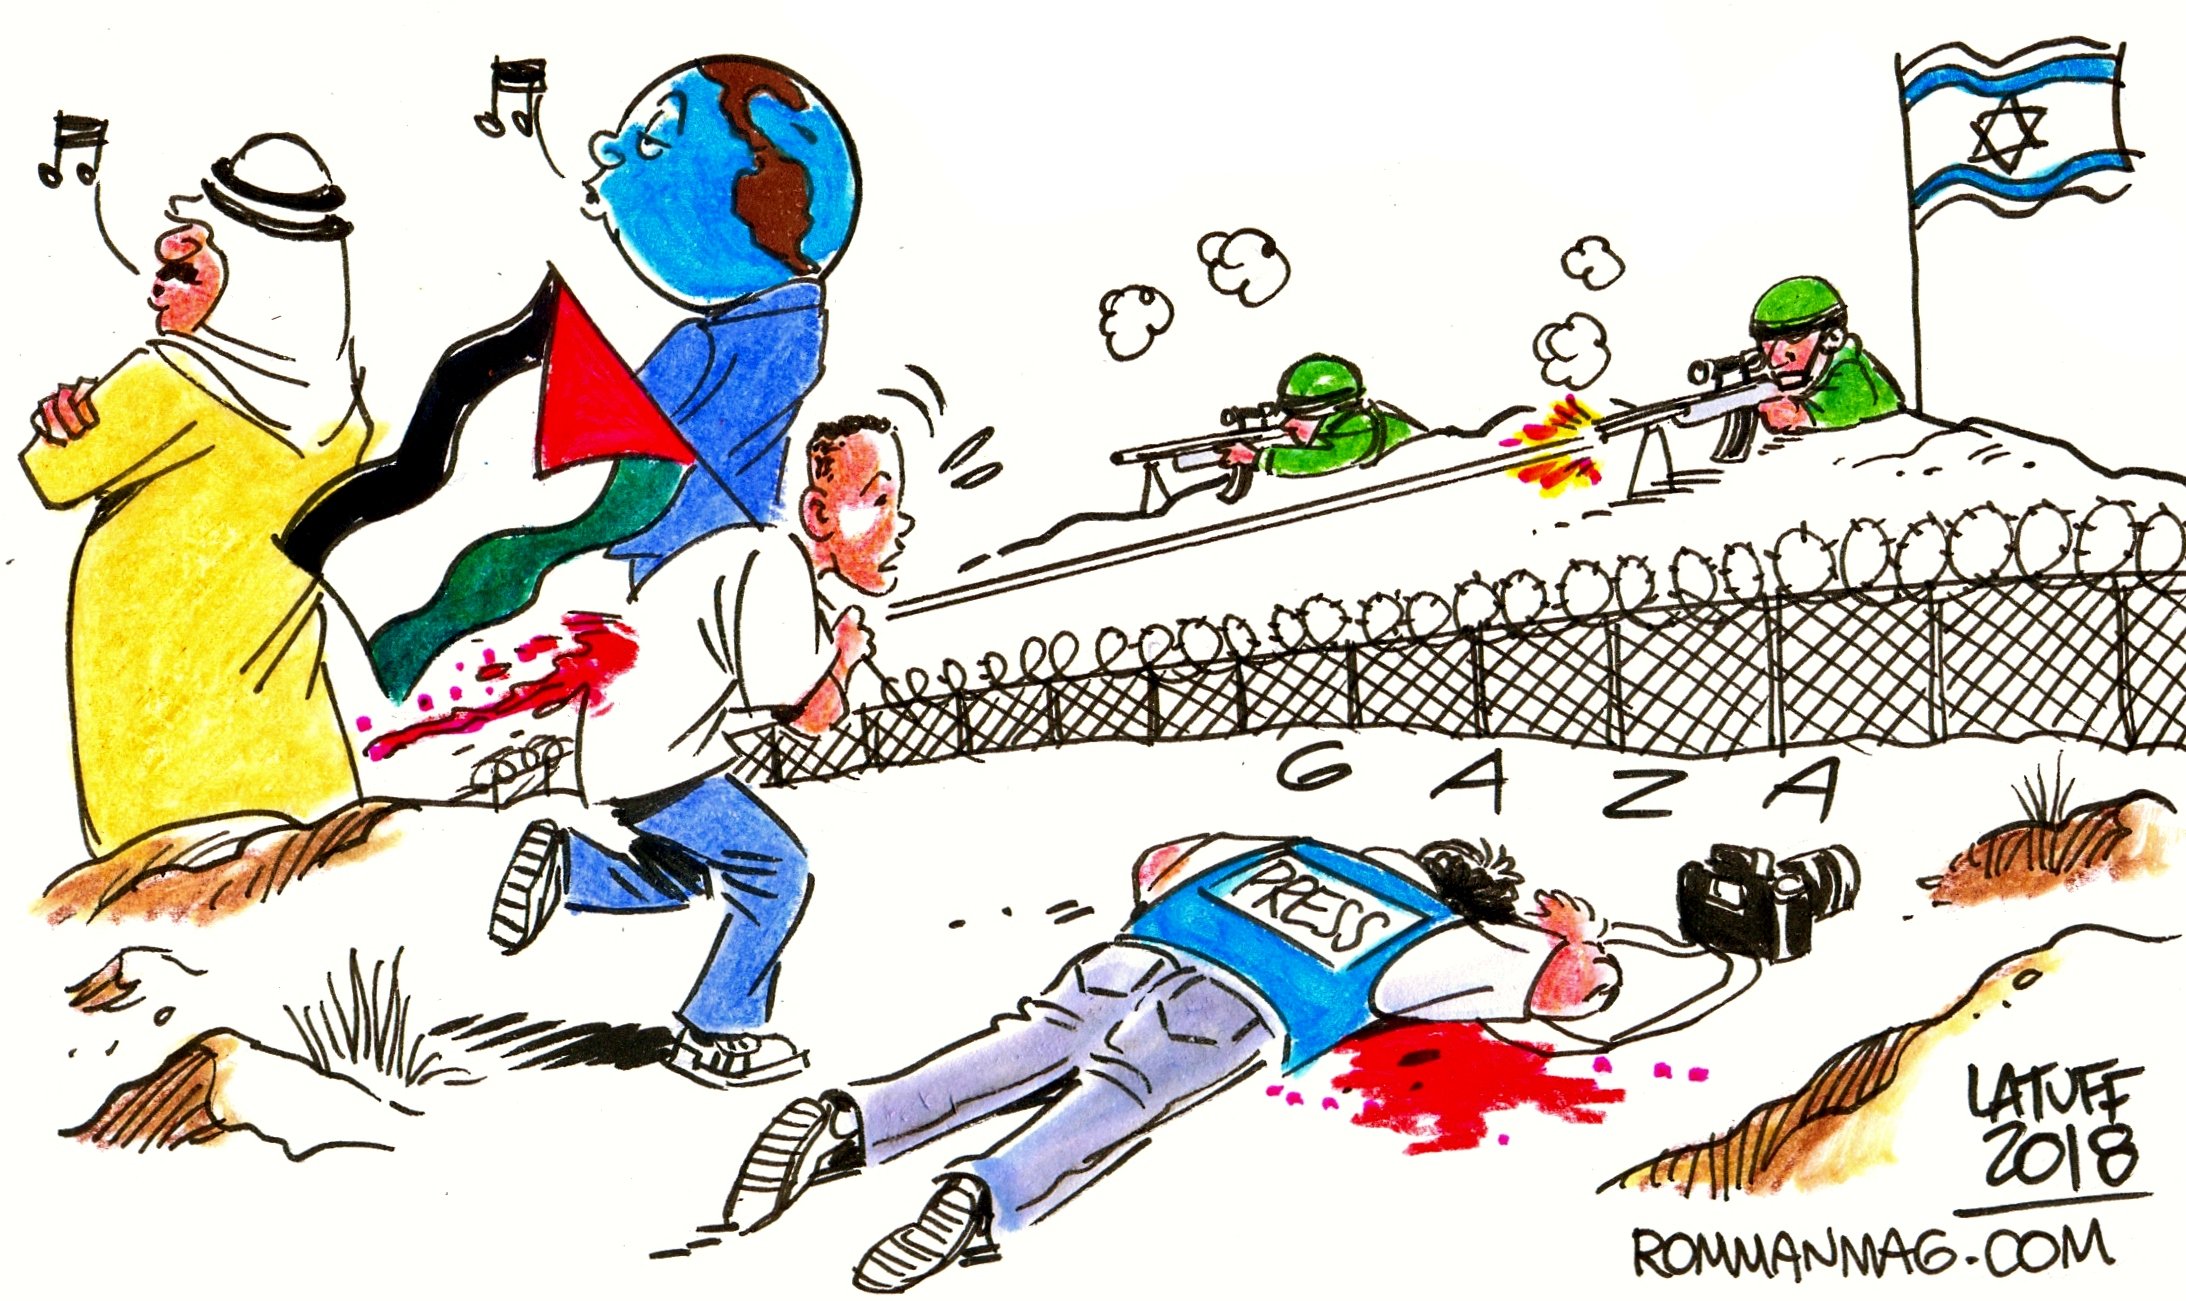 مسيرات غزة